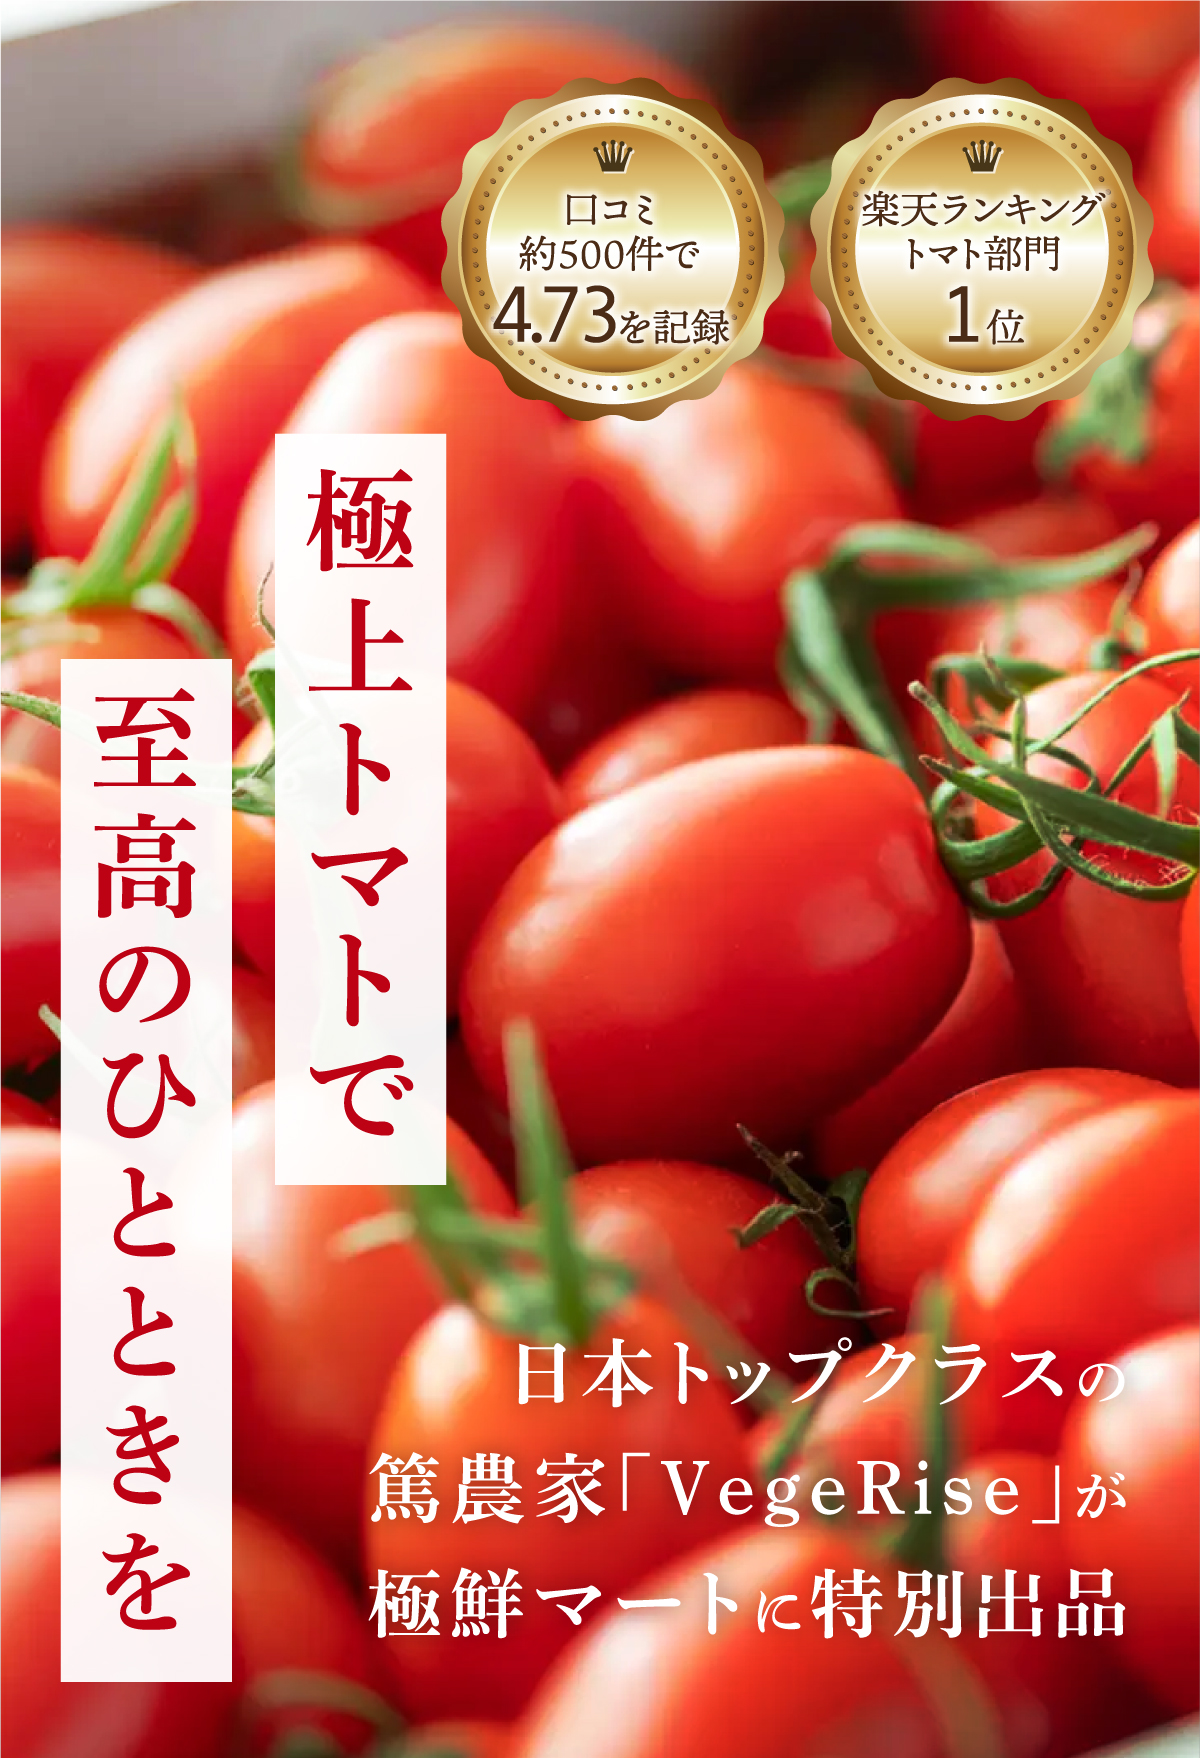 極上トマトで至高のひとときを 楽天ランキングトマト部門1位 口コミ約500件で4.73を記録 日本トップクラスの篤農家「VageRise」が極鮮マートに特別出品